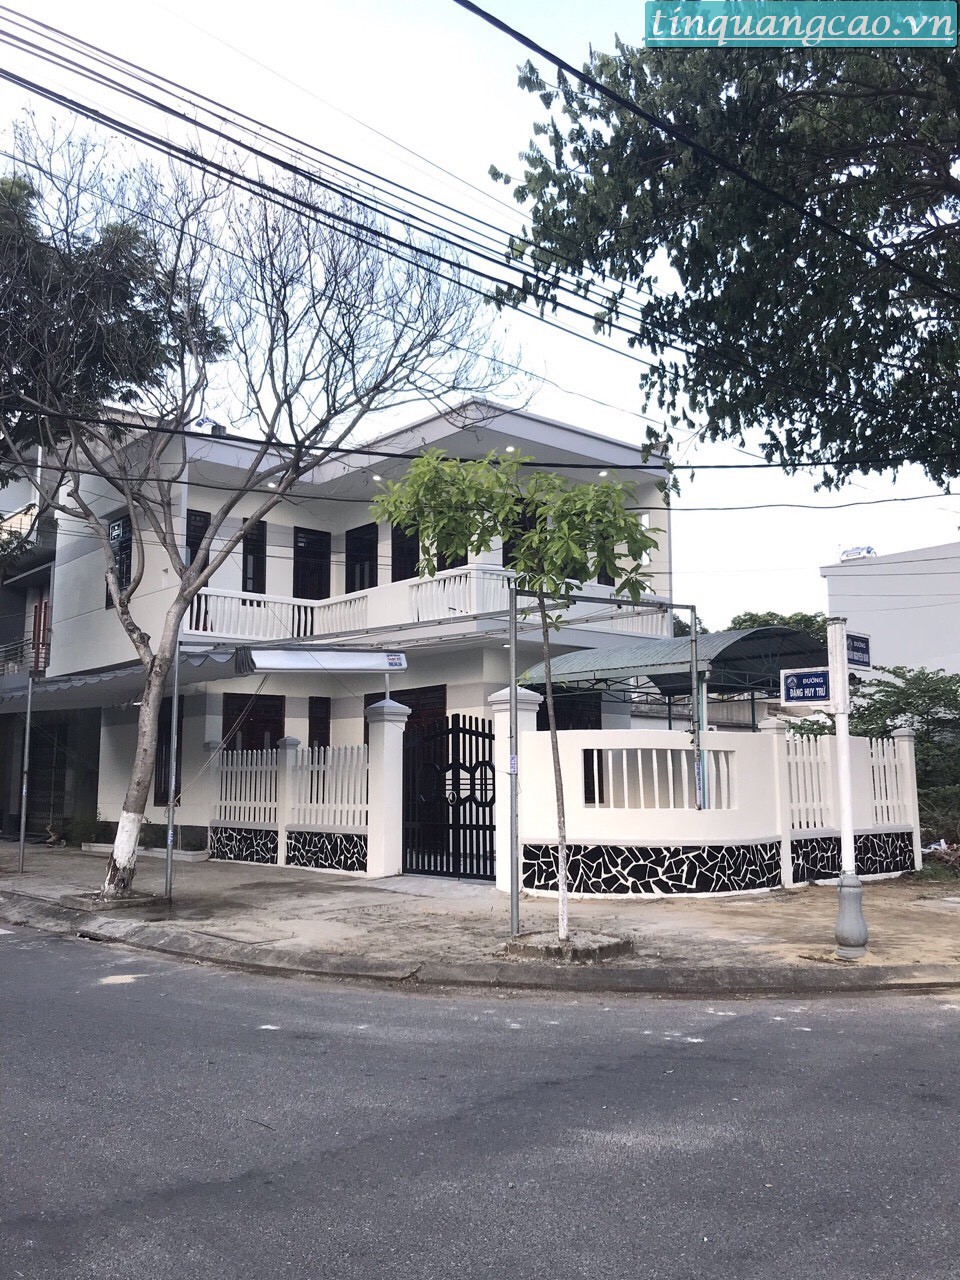 Cần bán nhà 2 tầng 2 mặt tiền đường Trần Nguyên Đán & Đặng Huy Trứ, phường Hòa Minh, quận Liên Chiểu